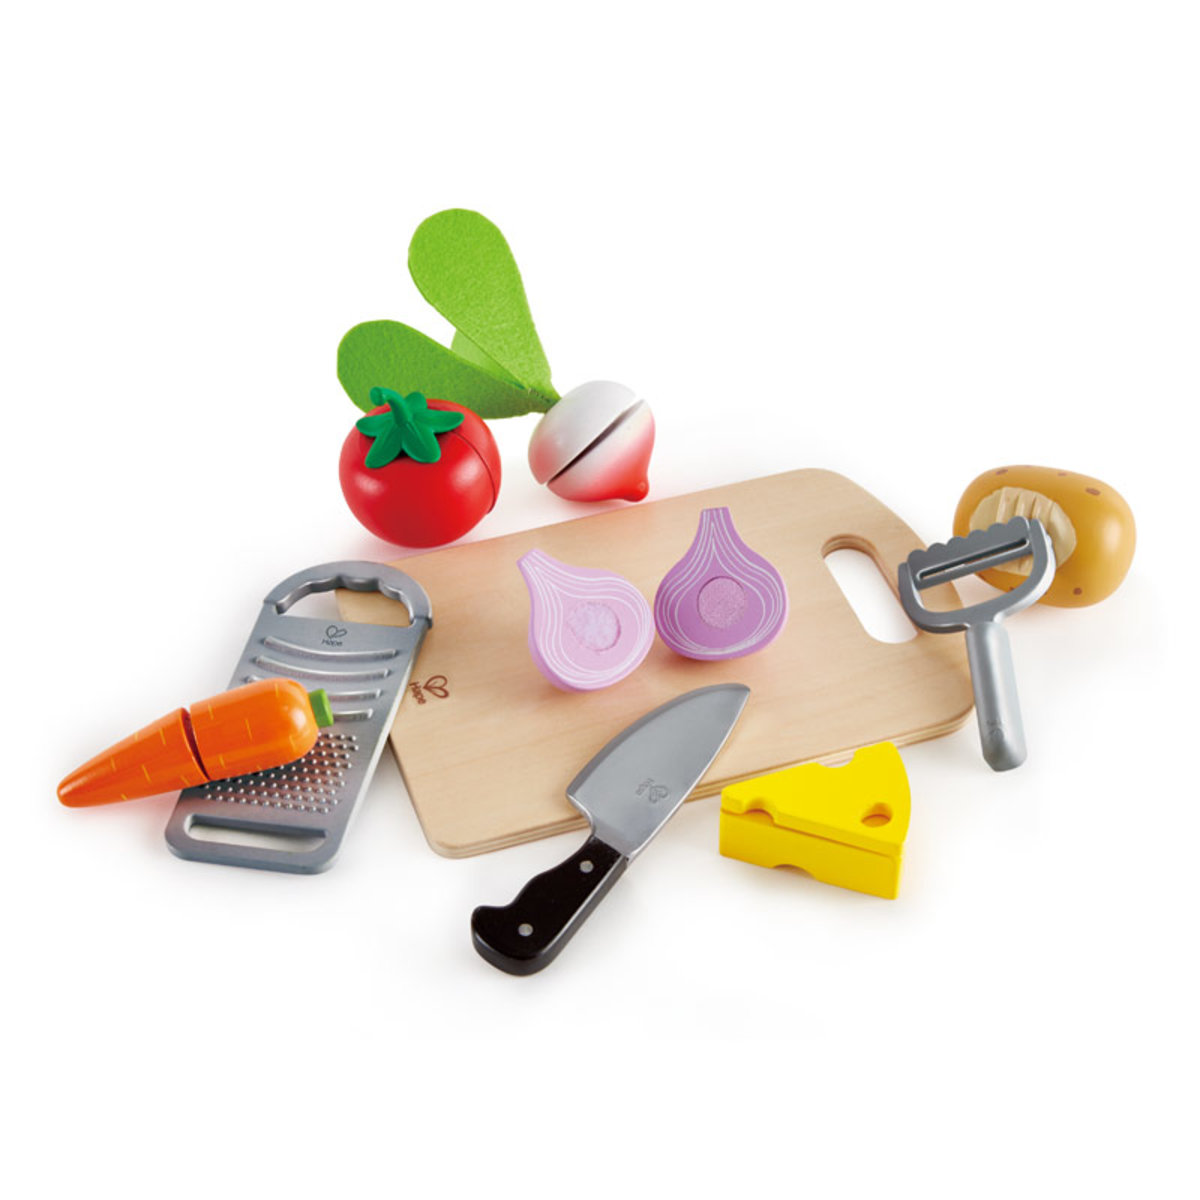 蔬果切刨工具 | 廚房玩具 | 煮飯仔 | E3154